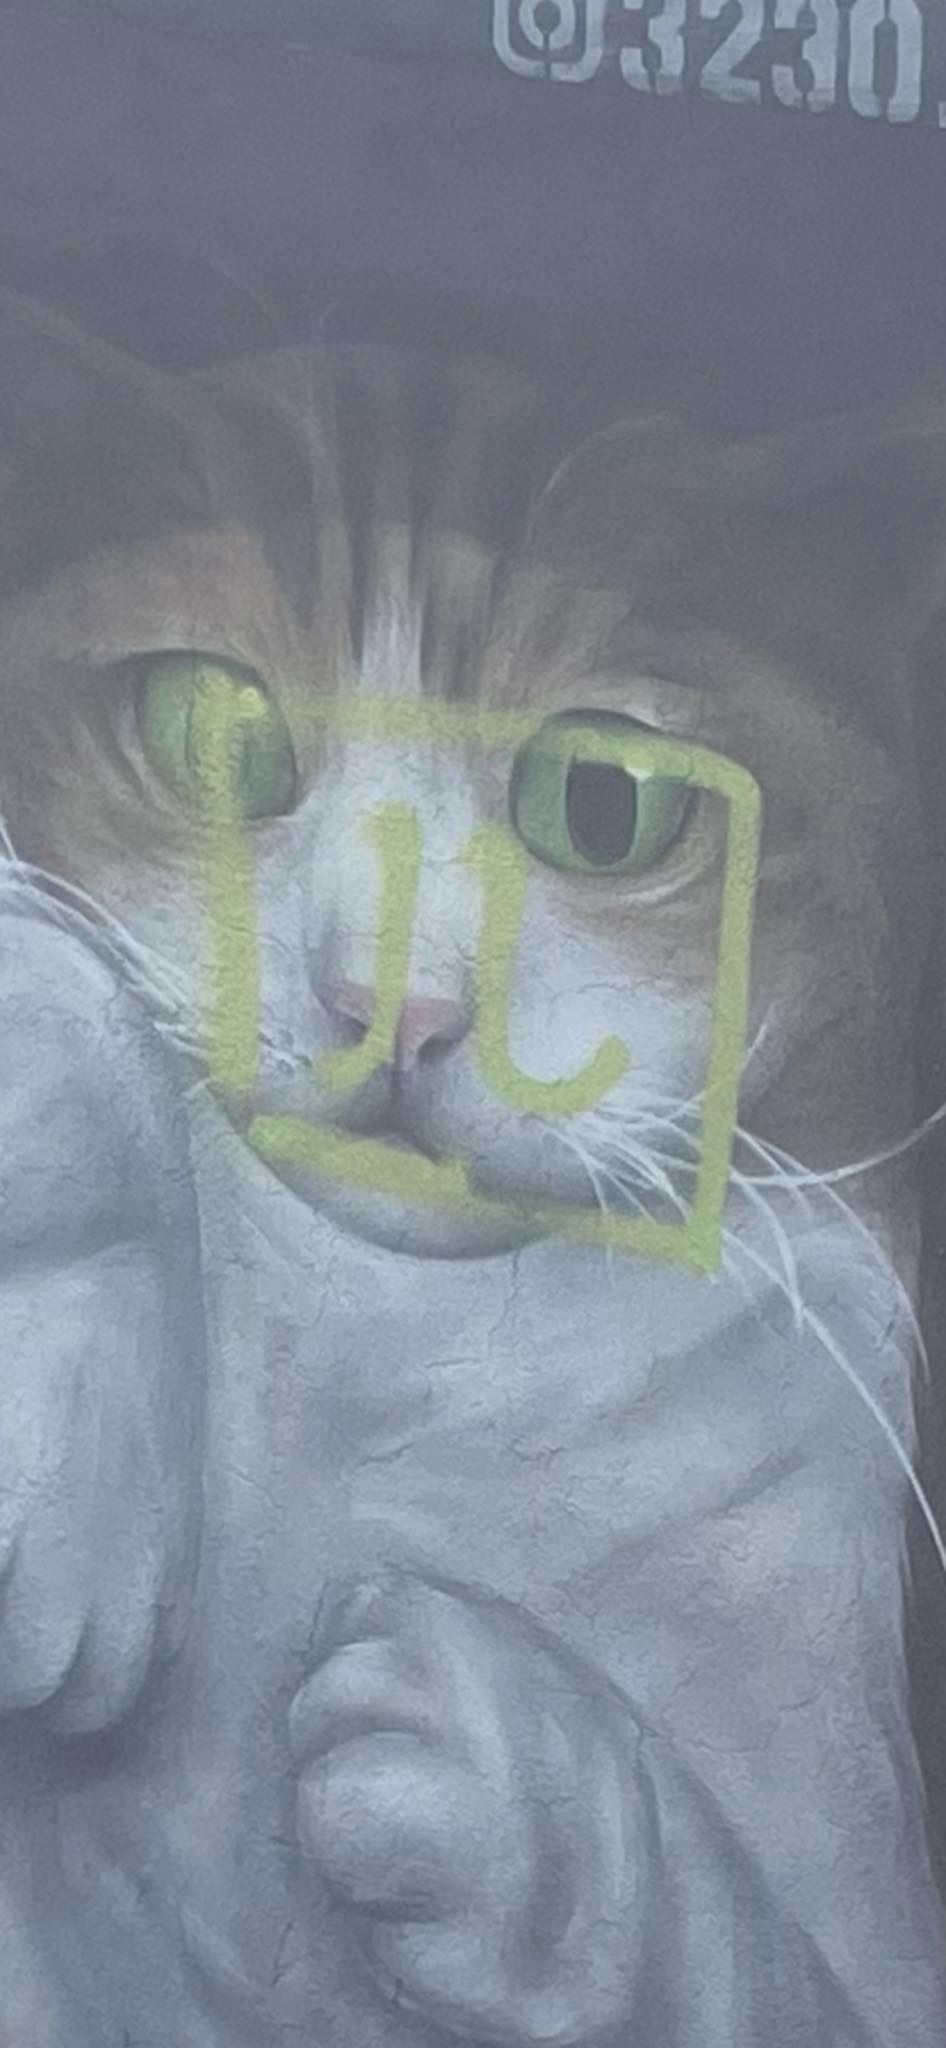 猫咪面部被人用绿色油漆喷上一个像“四”字的符号，非常碍眼。